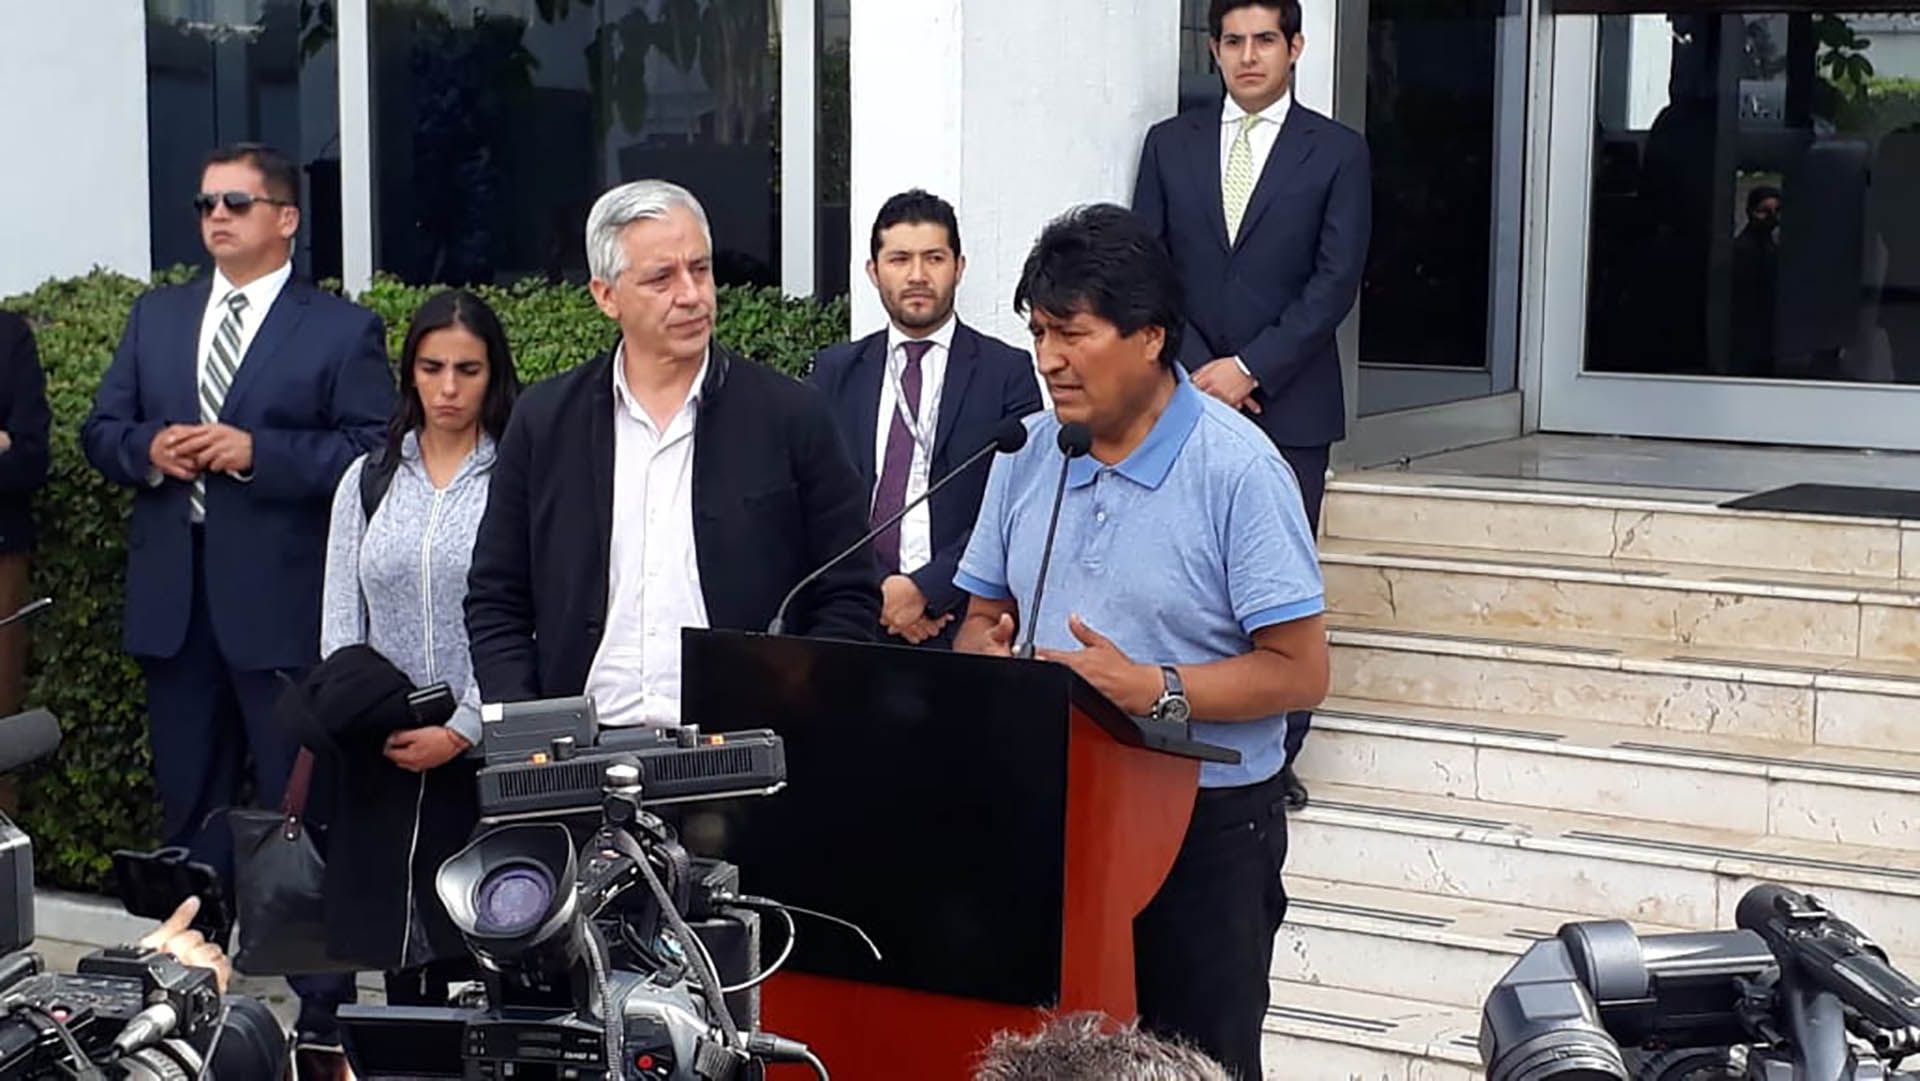 Morales recibió el asilo por parte del gobierno mexicano hace varias semanas, lo que fue el detonante para la tensión actual (Foto: Juan Vicente Manrique/ Infobae México)